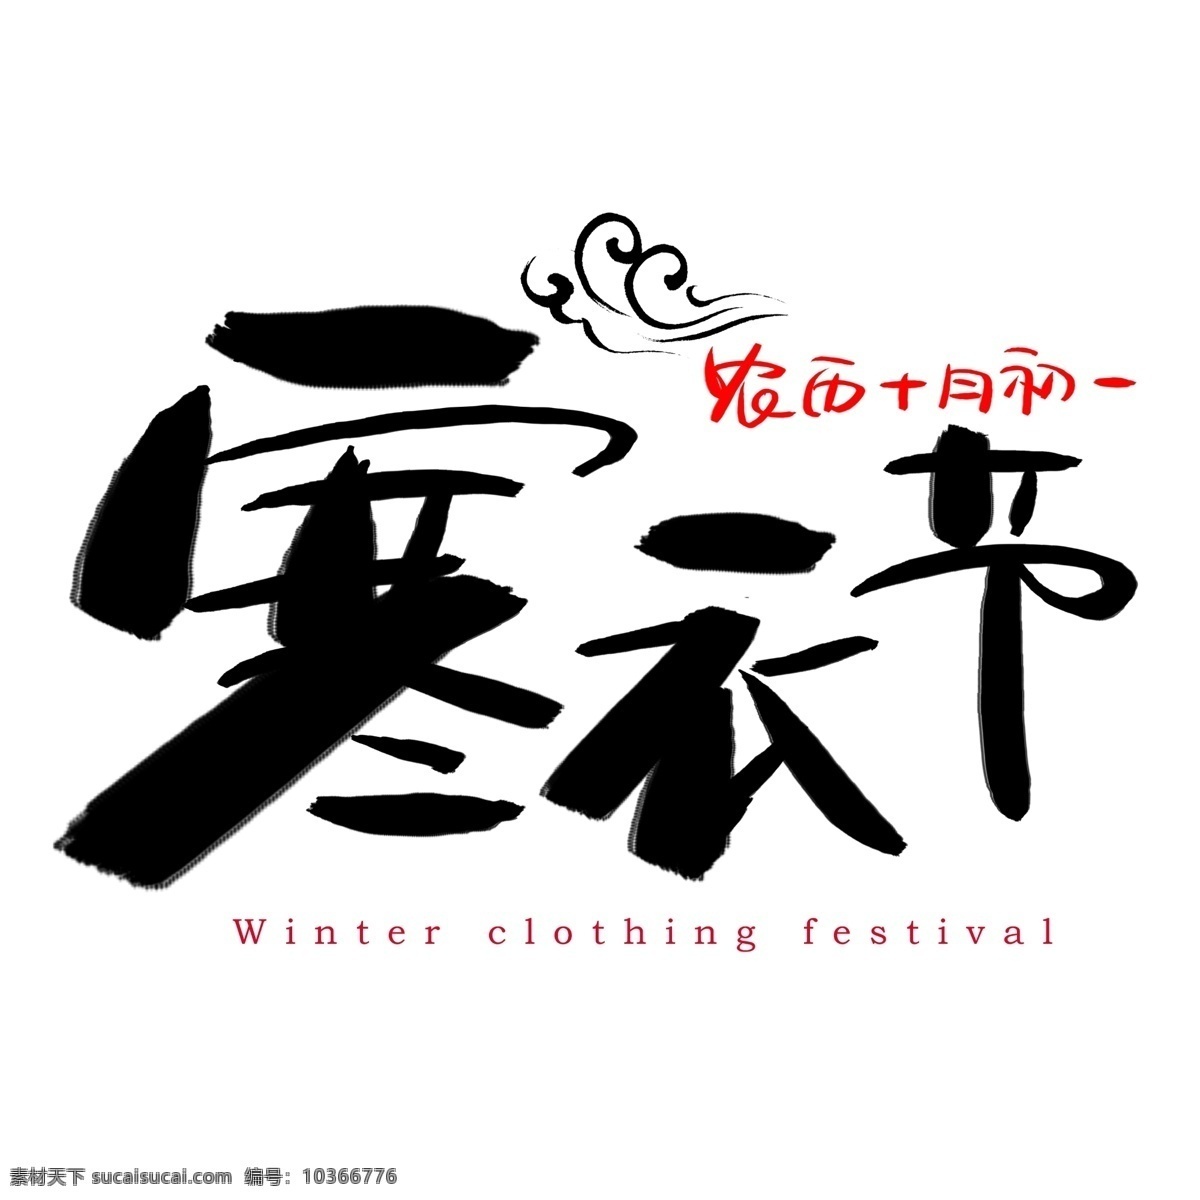 寒衣 节 手绘 书法艺术 字 寒衣节 winter clothing festival 祭祖节 十月朝 冥阴节